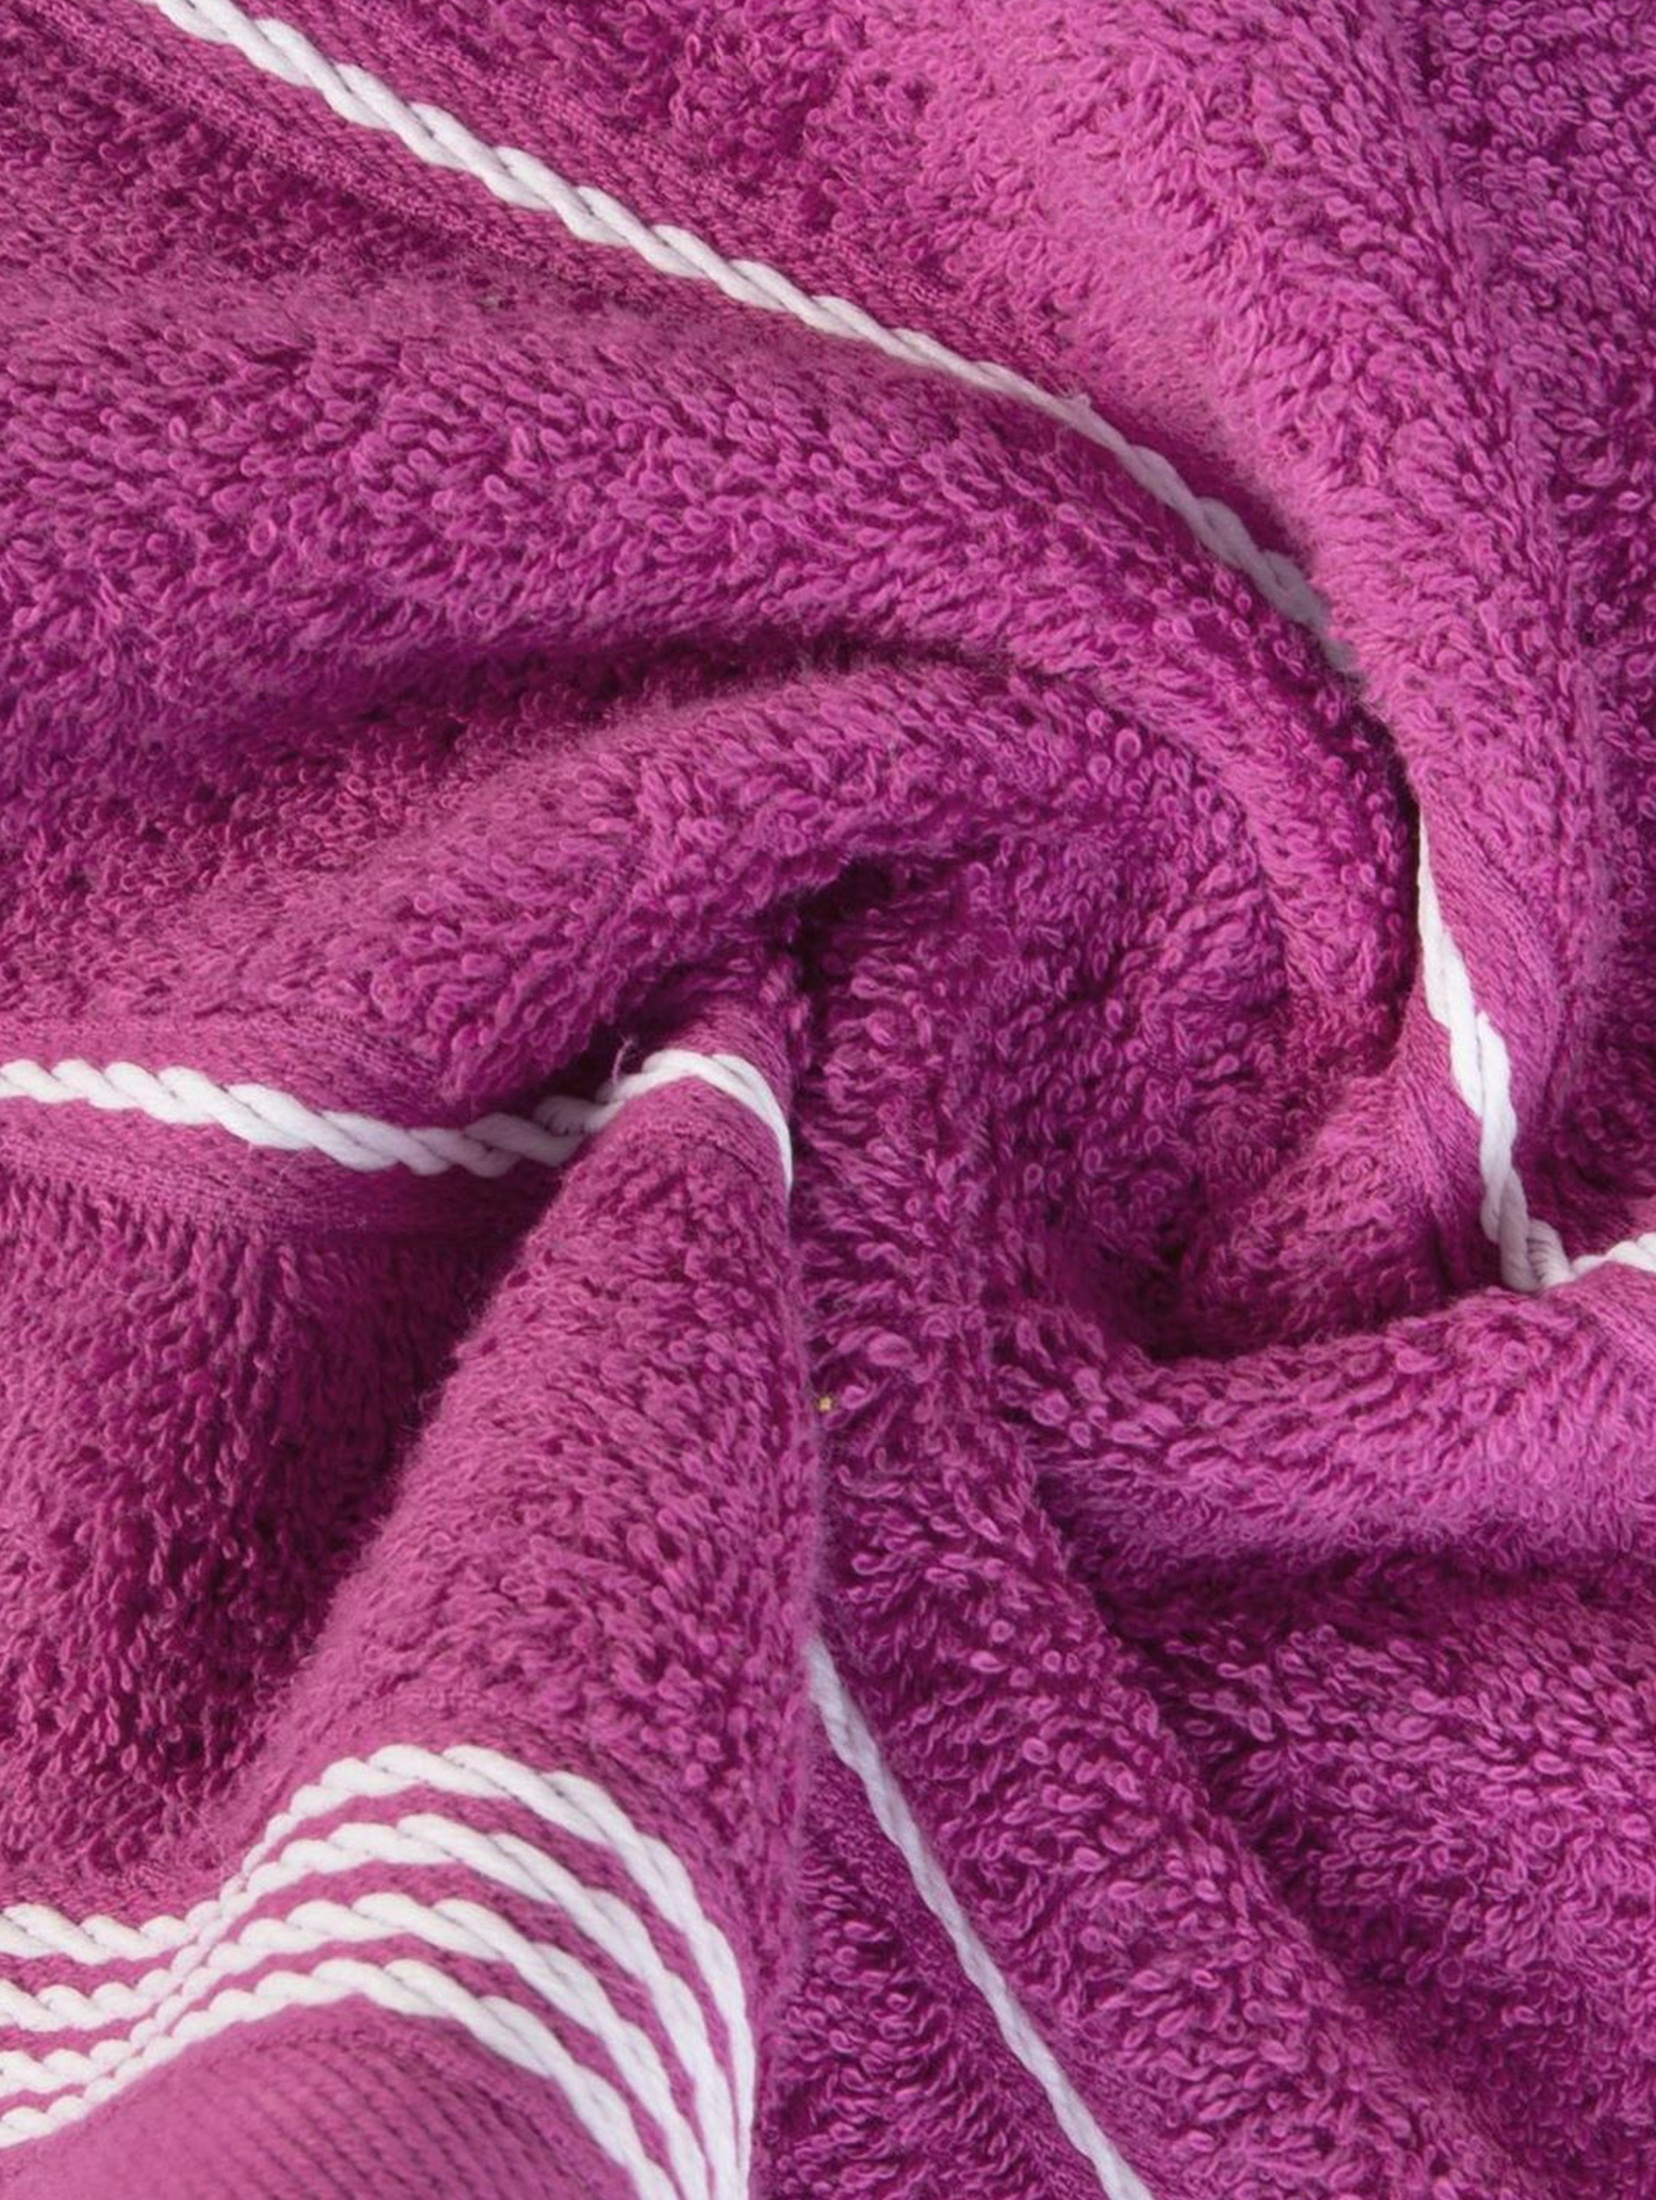 Ręcznik Mira 50x90 cm - fioletowy